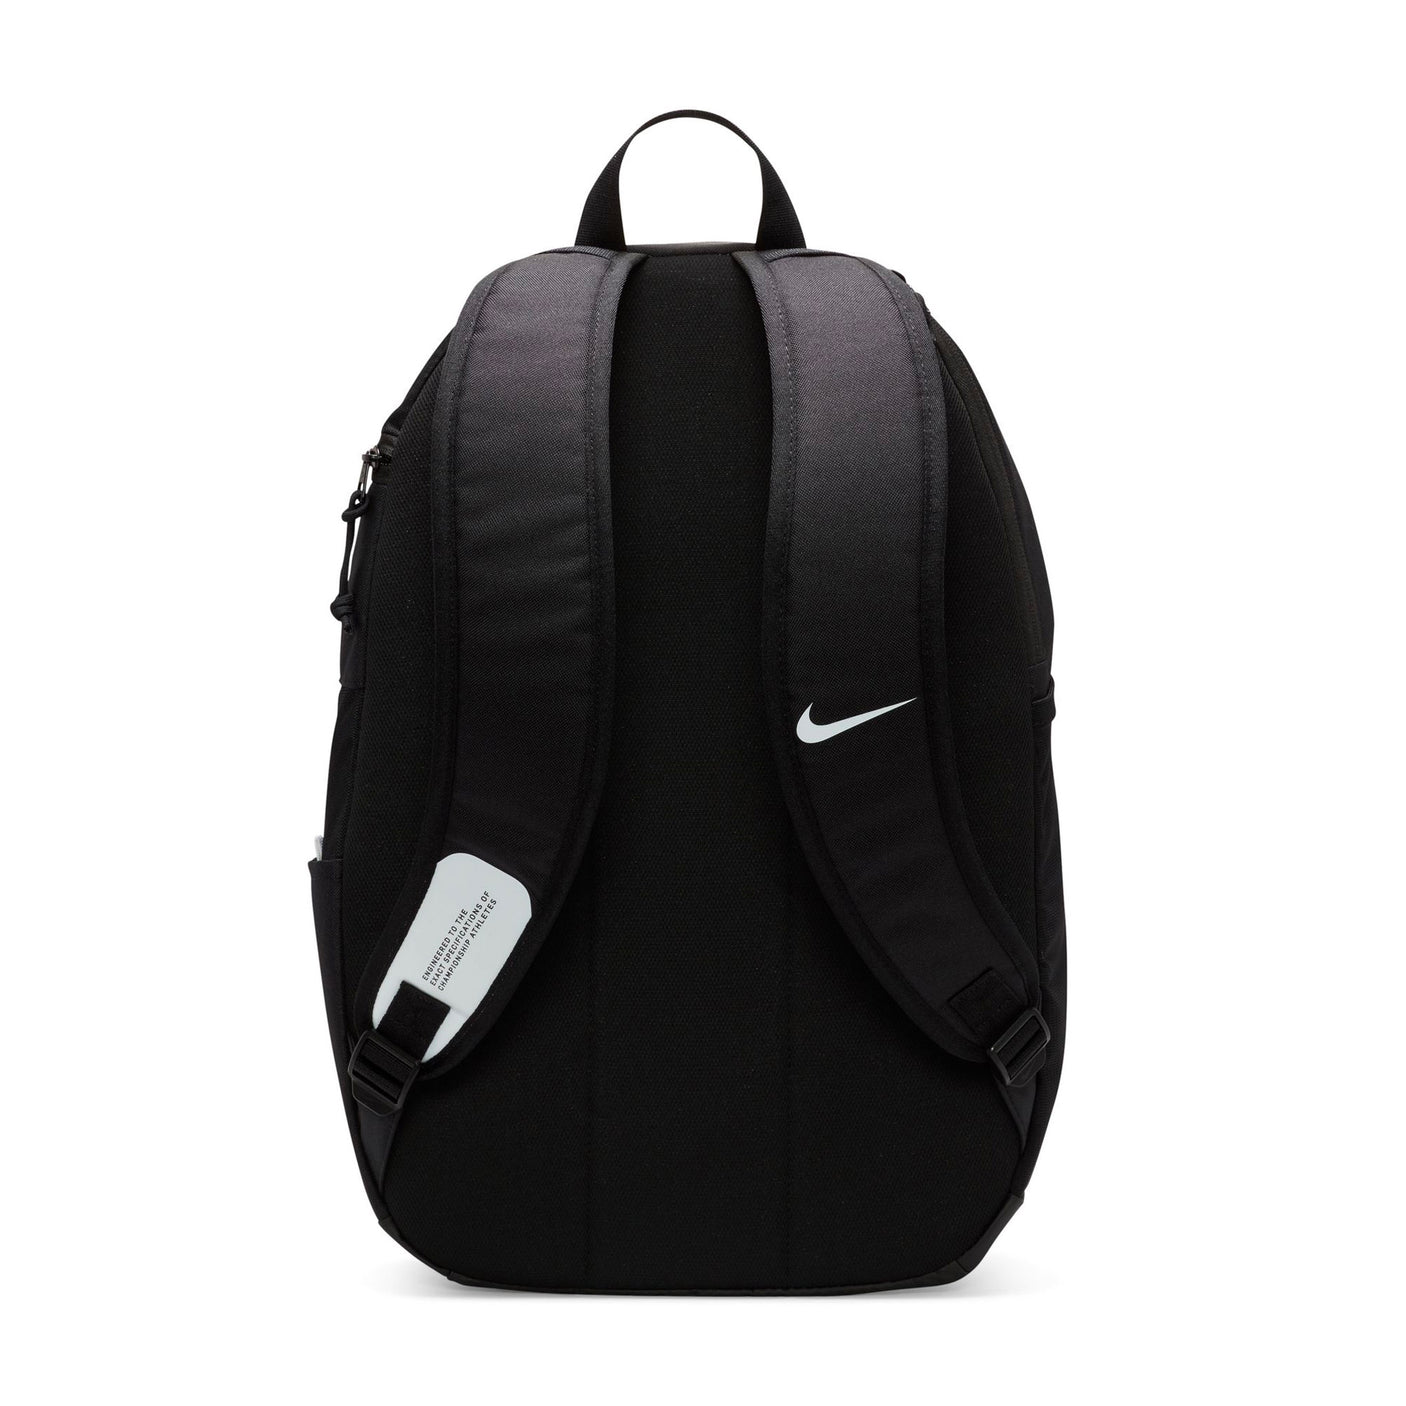 Nike Academy Team Backpack Black/White Back